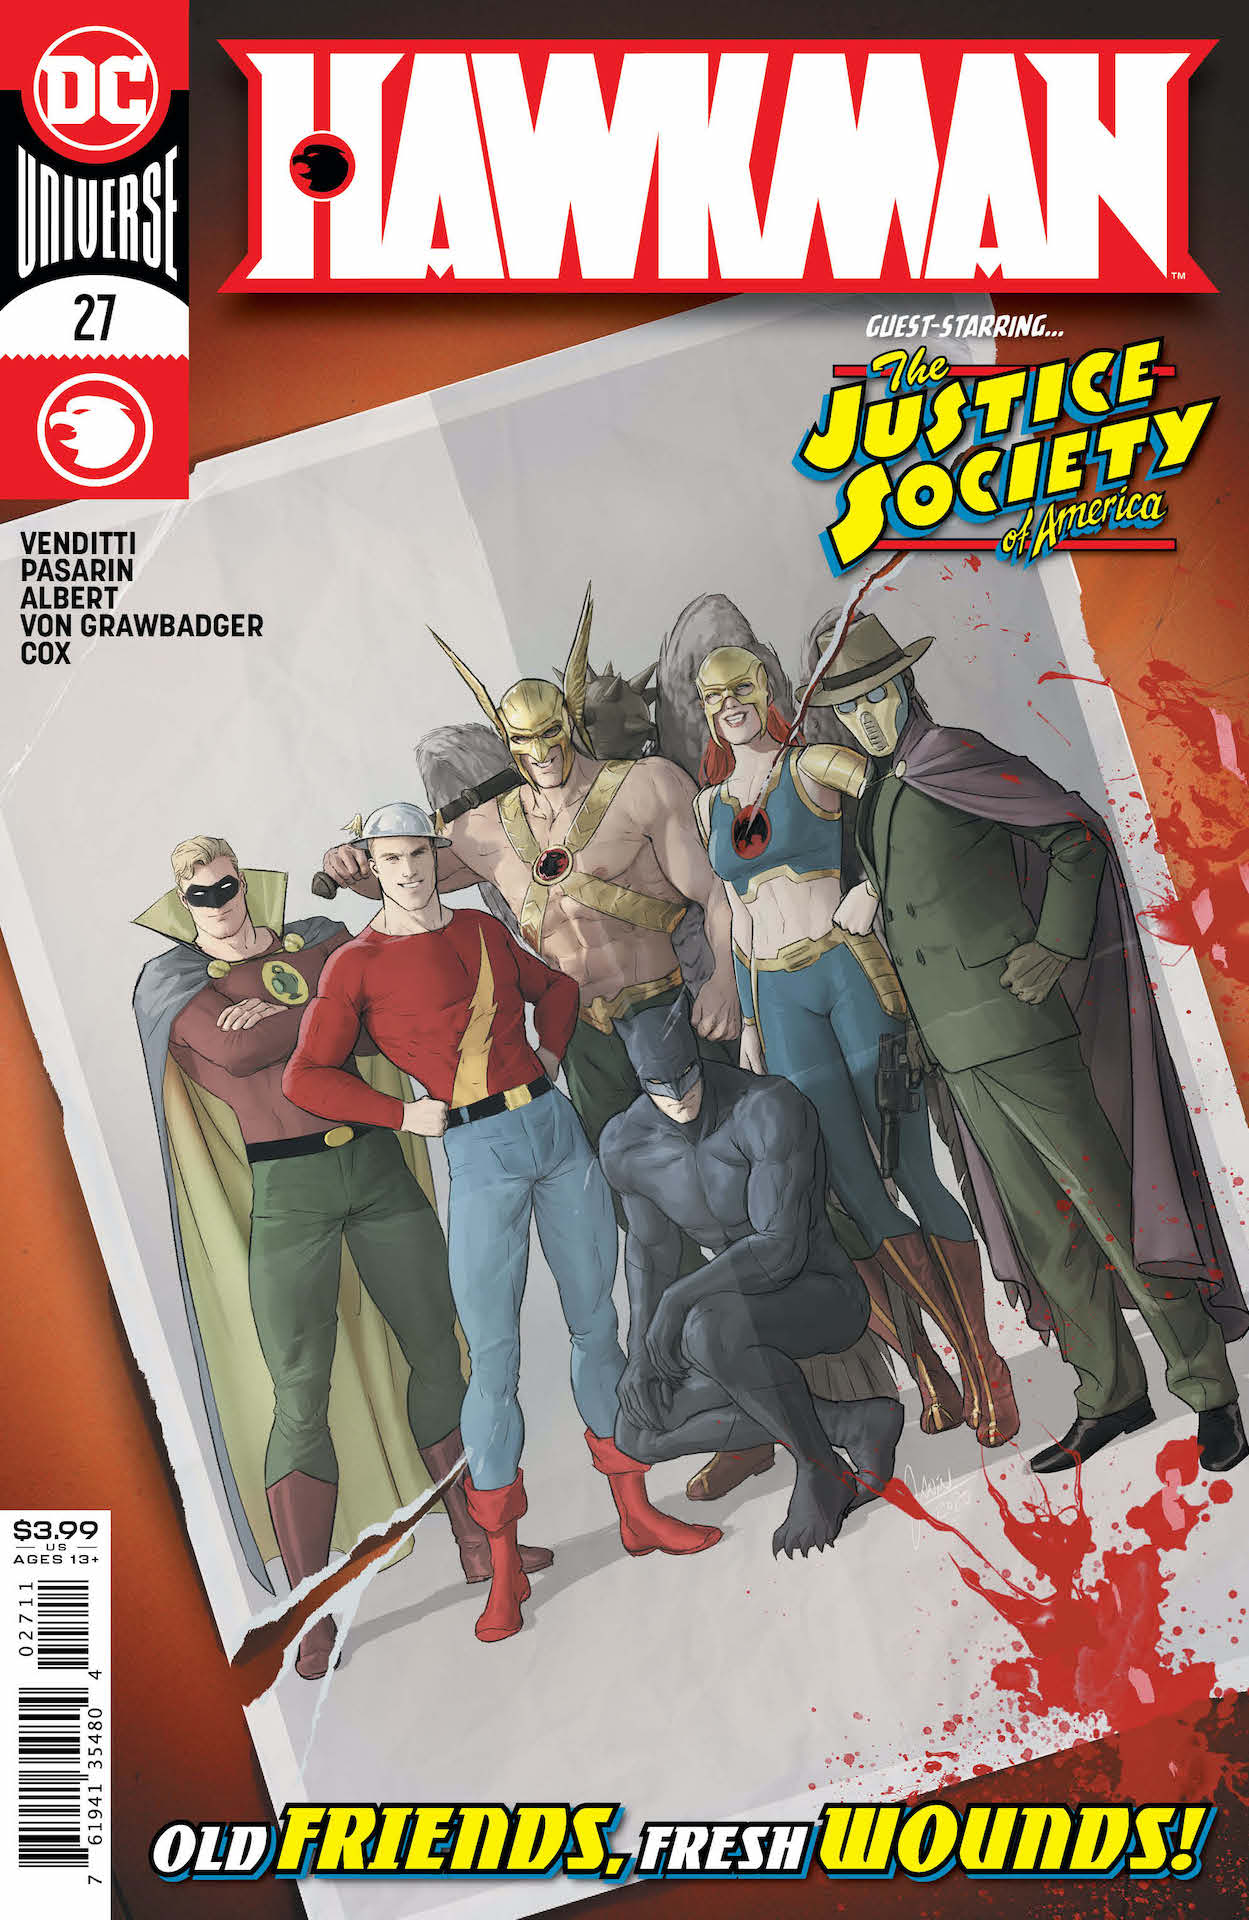 DC Preview: Hawkman #27